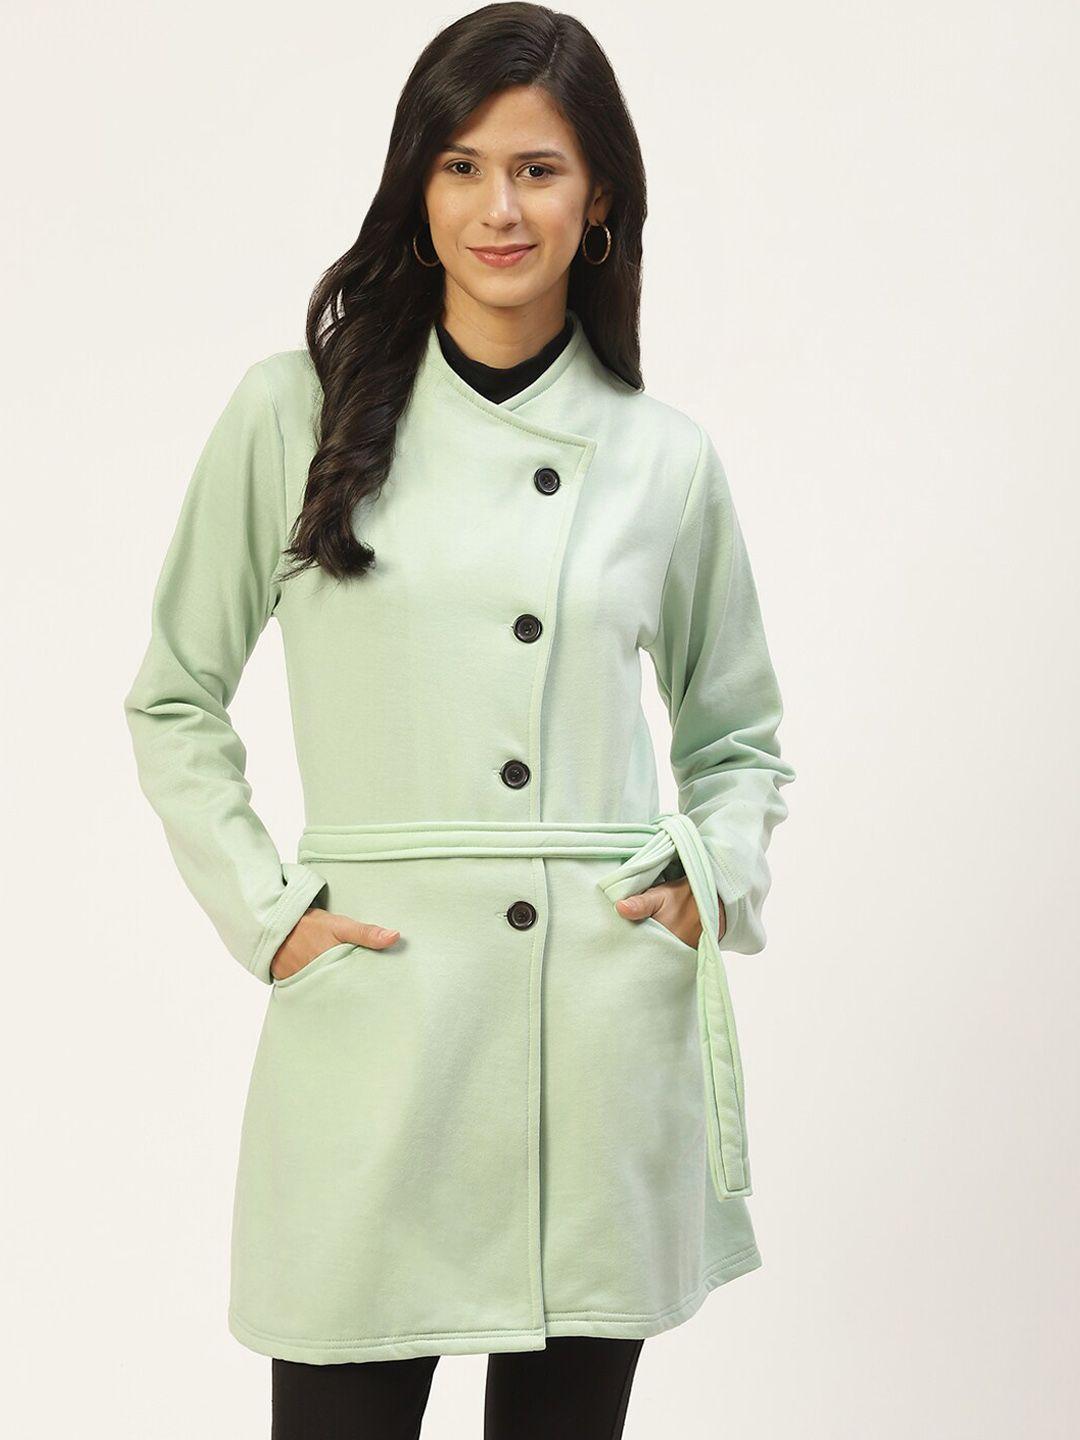 baesd lightweight longline fleece tailored jacket